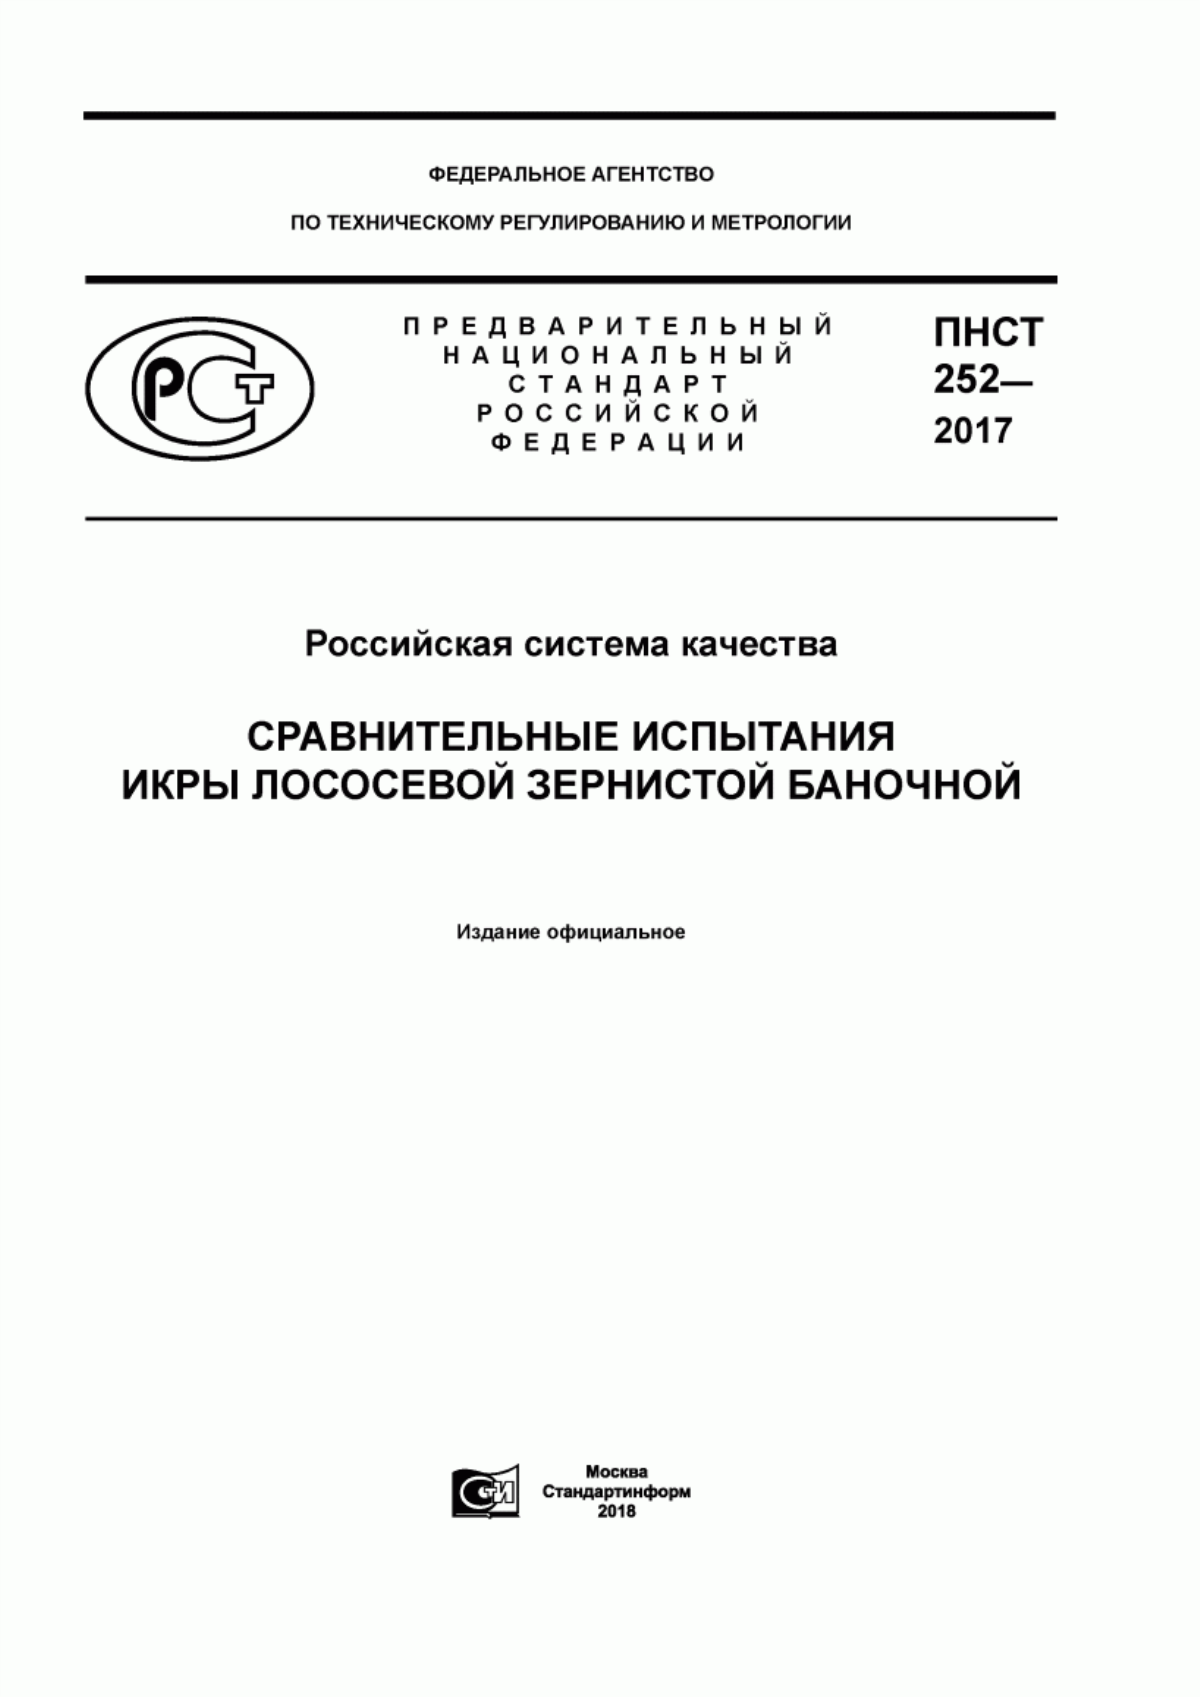 ПНСТ 252-2017 Российская система качества. Сравнительные испытания икры лососевой зернистой баночной